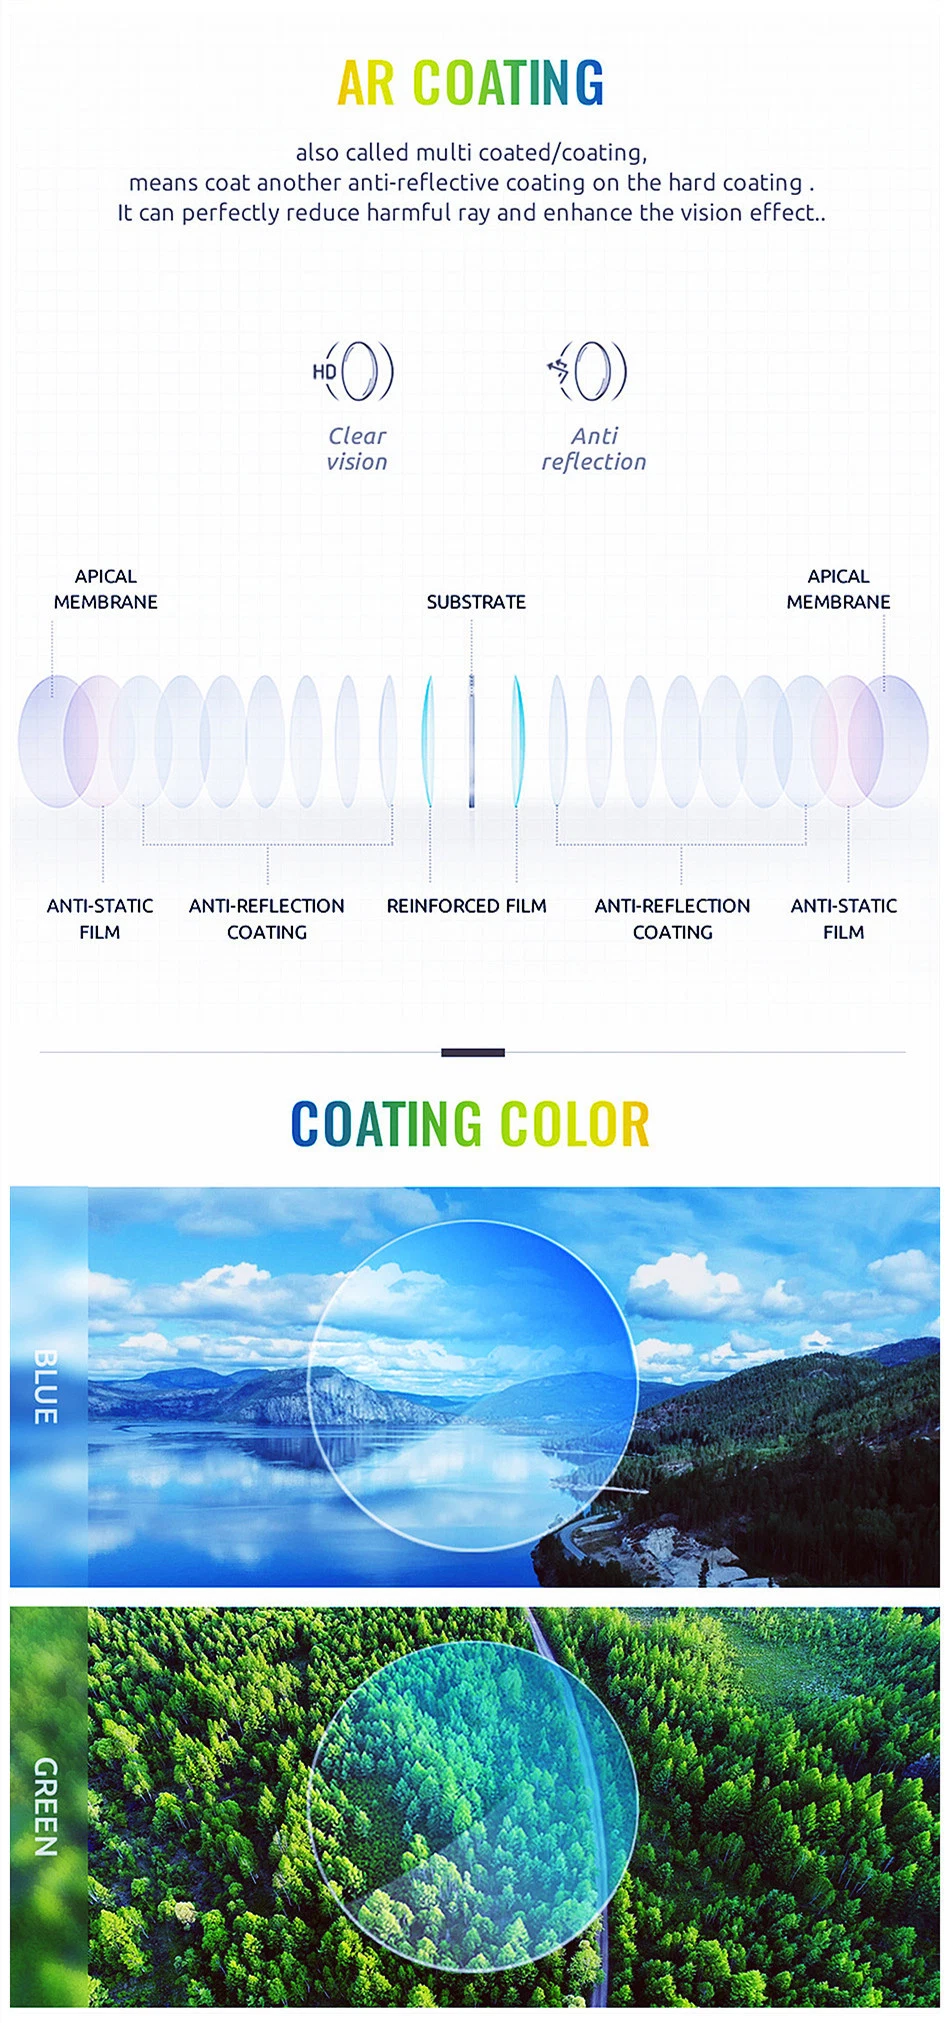 Ar Coating 1.56 Blue Cut UV420 Spin Photochromic Progressive Eyeglasses Prescription Lenses